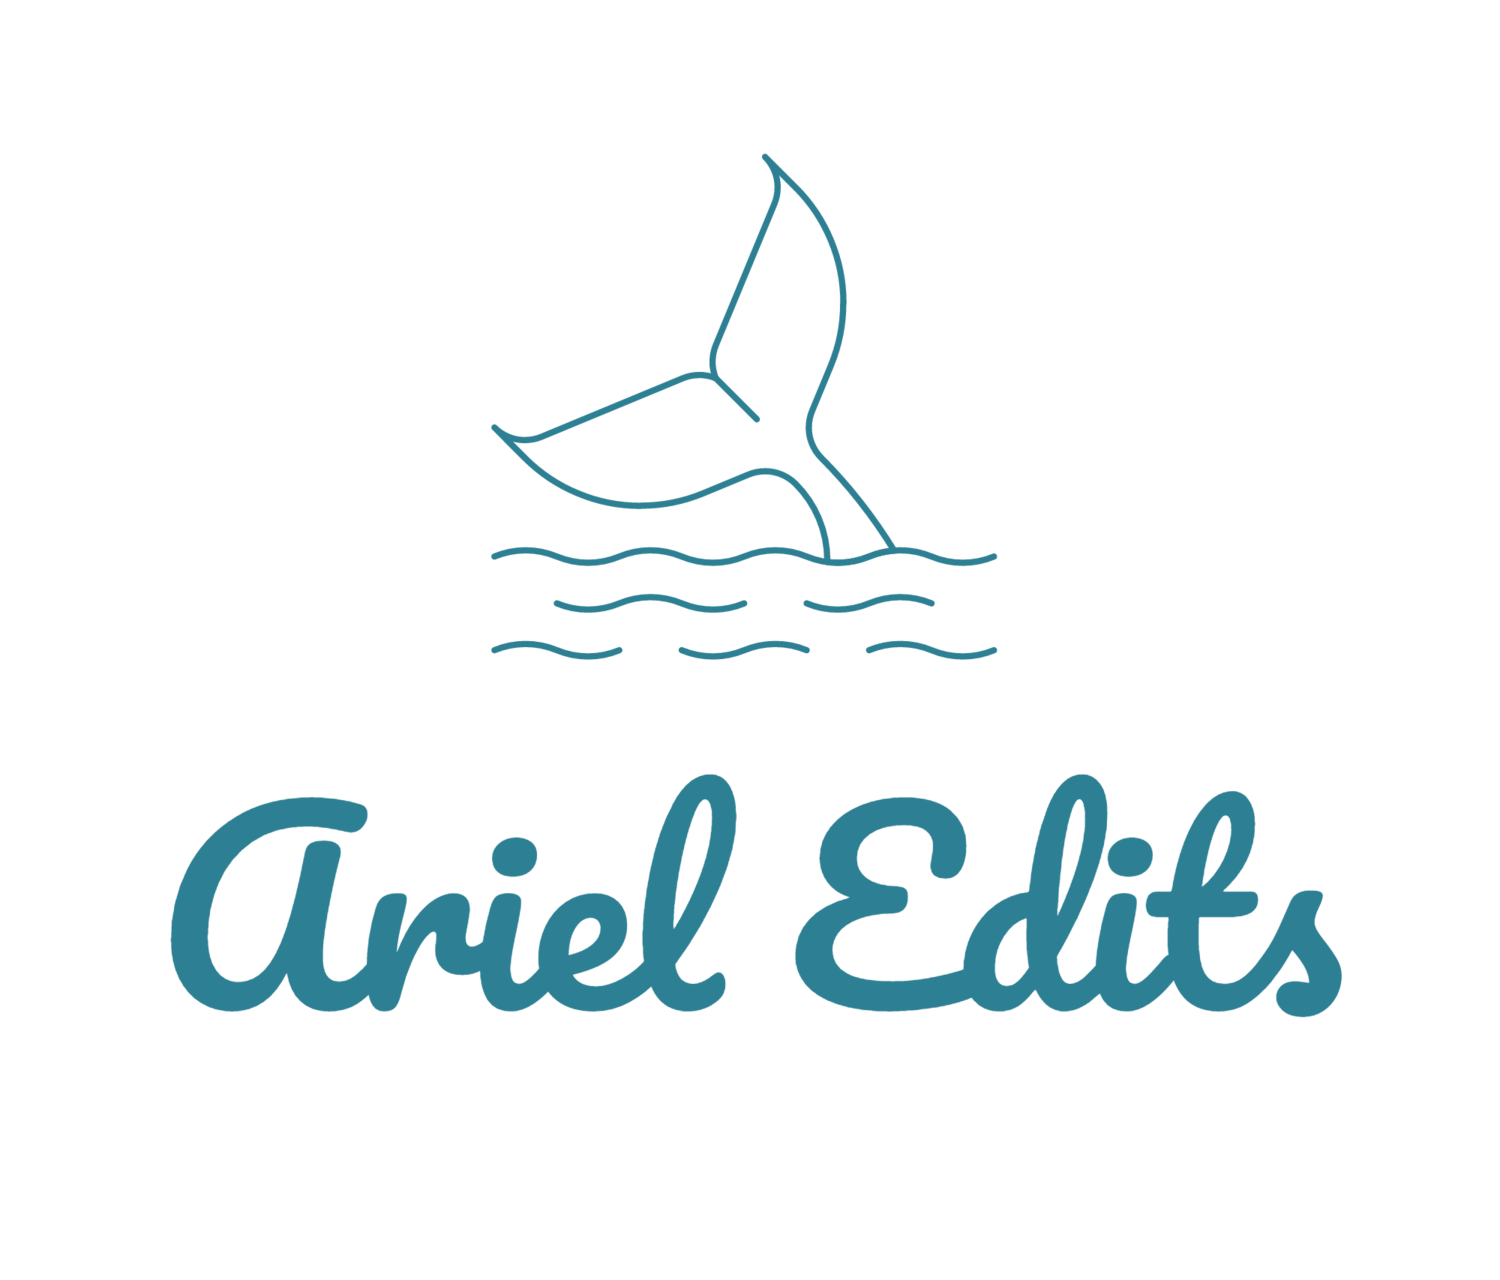 Ariel Edits